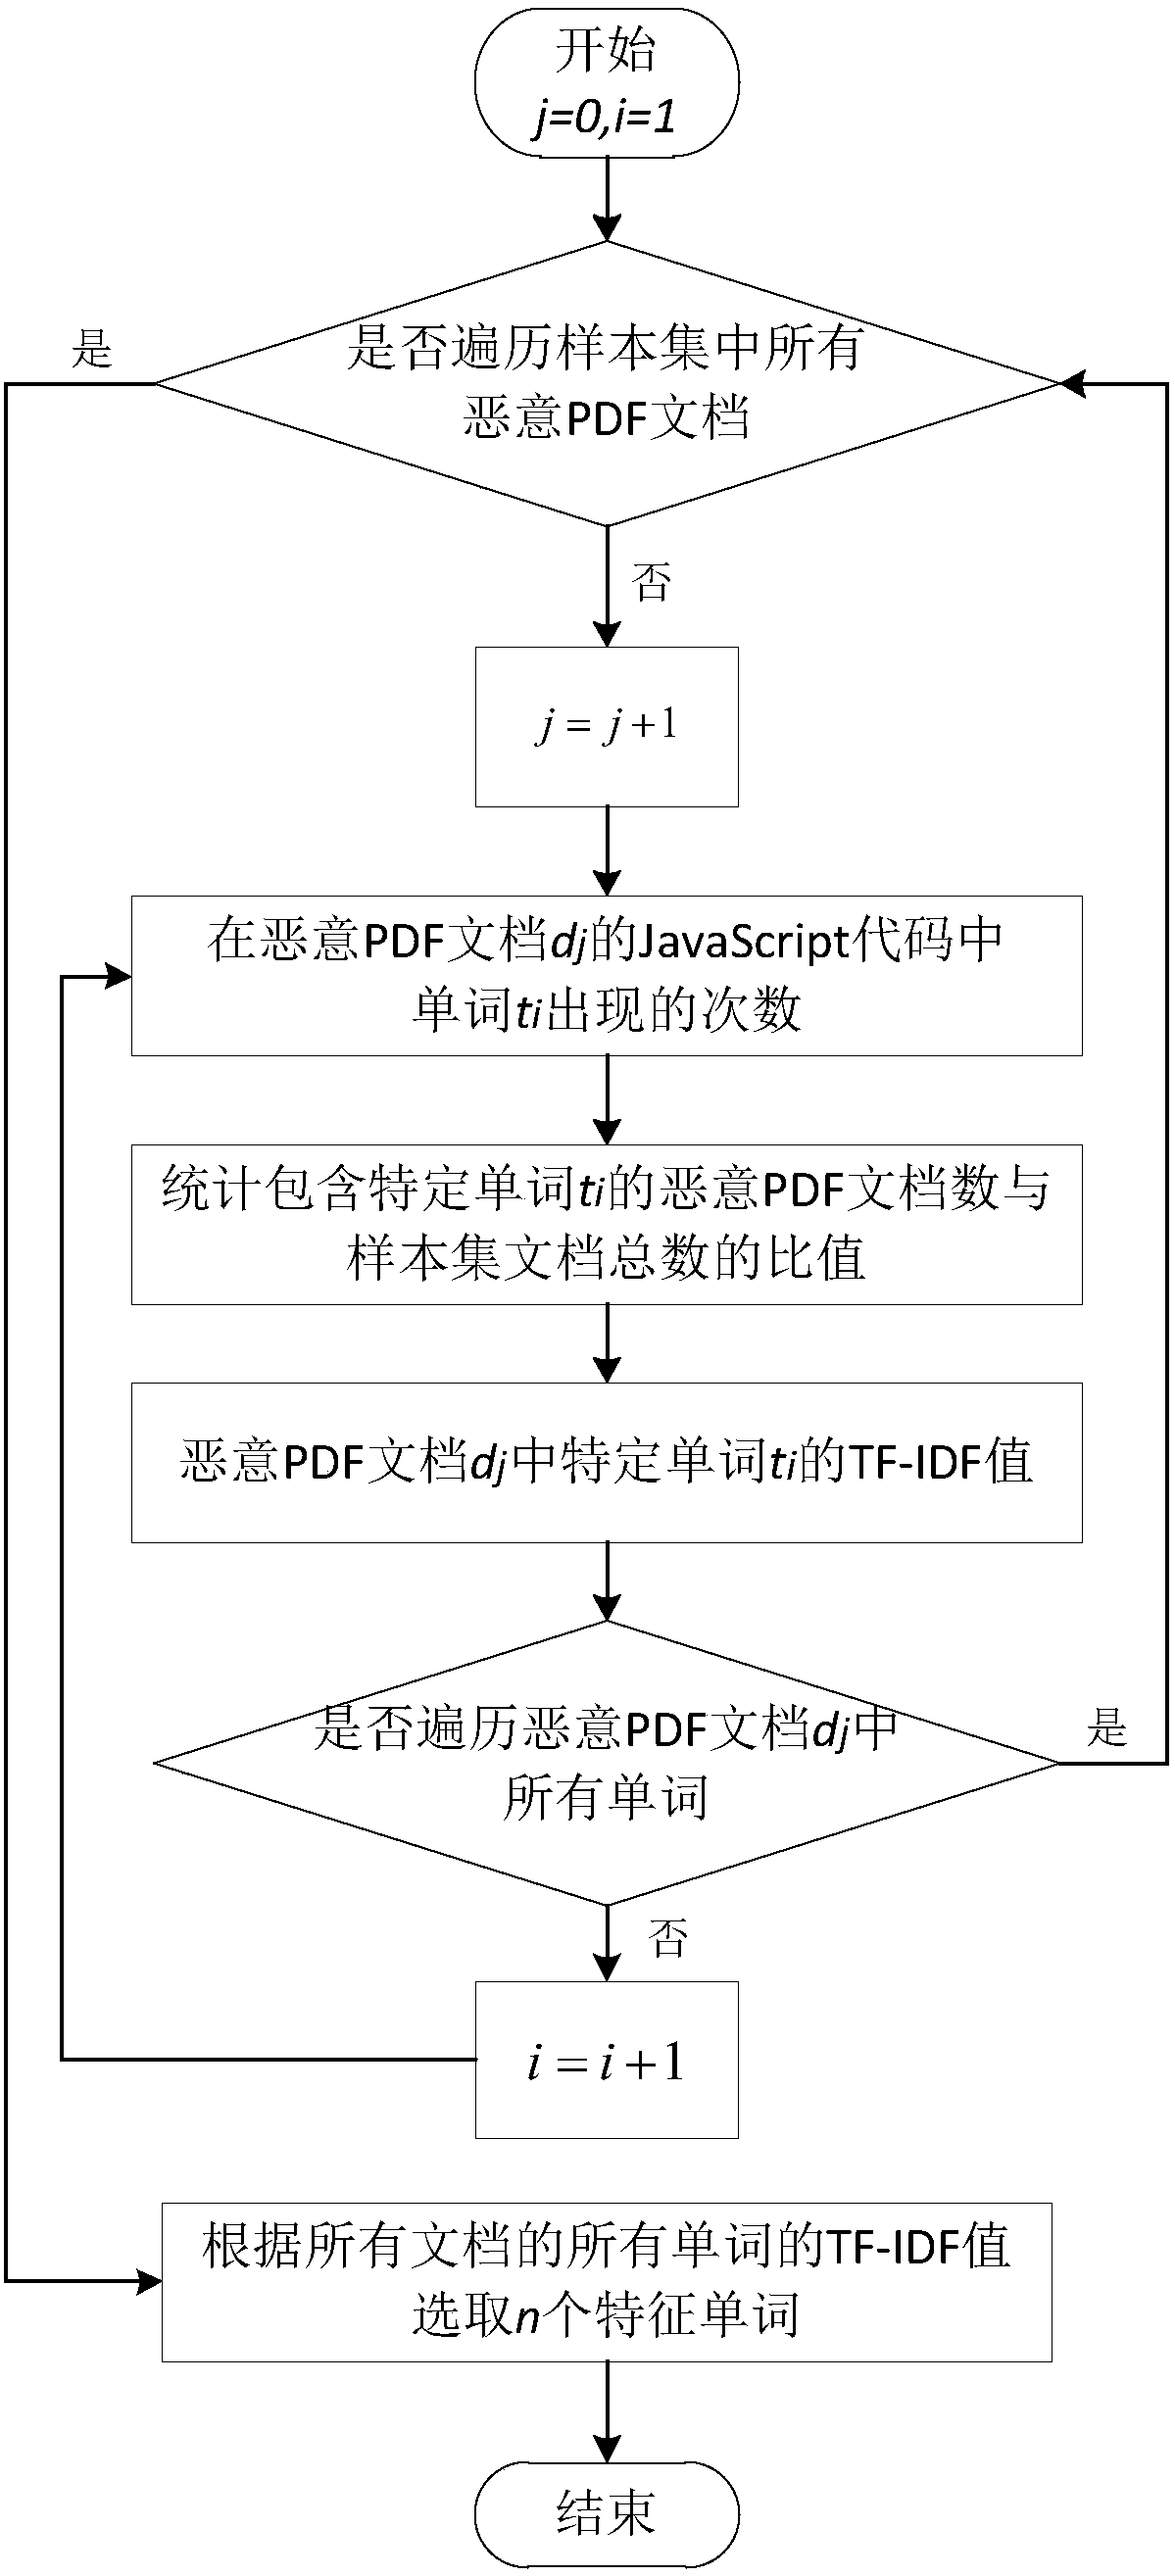 Malicious PDF document detection method based on TF-IDF algorithm and SVDD algorithm